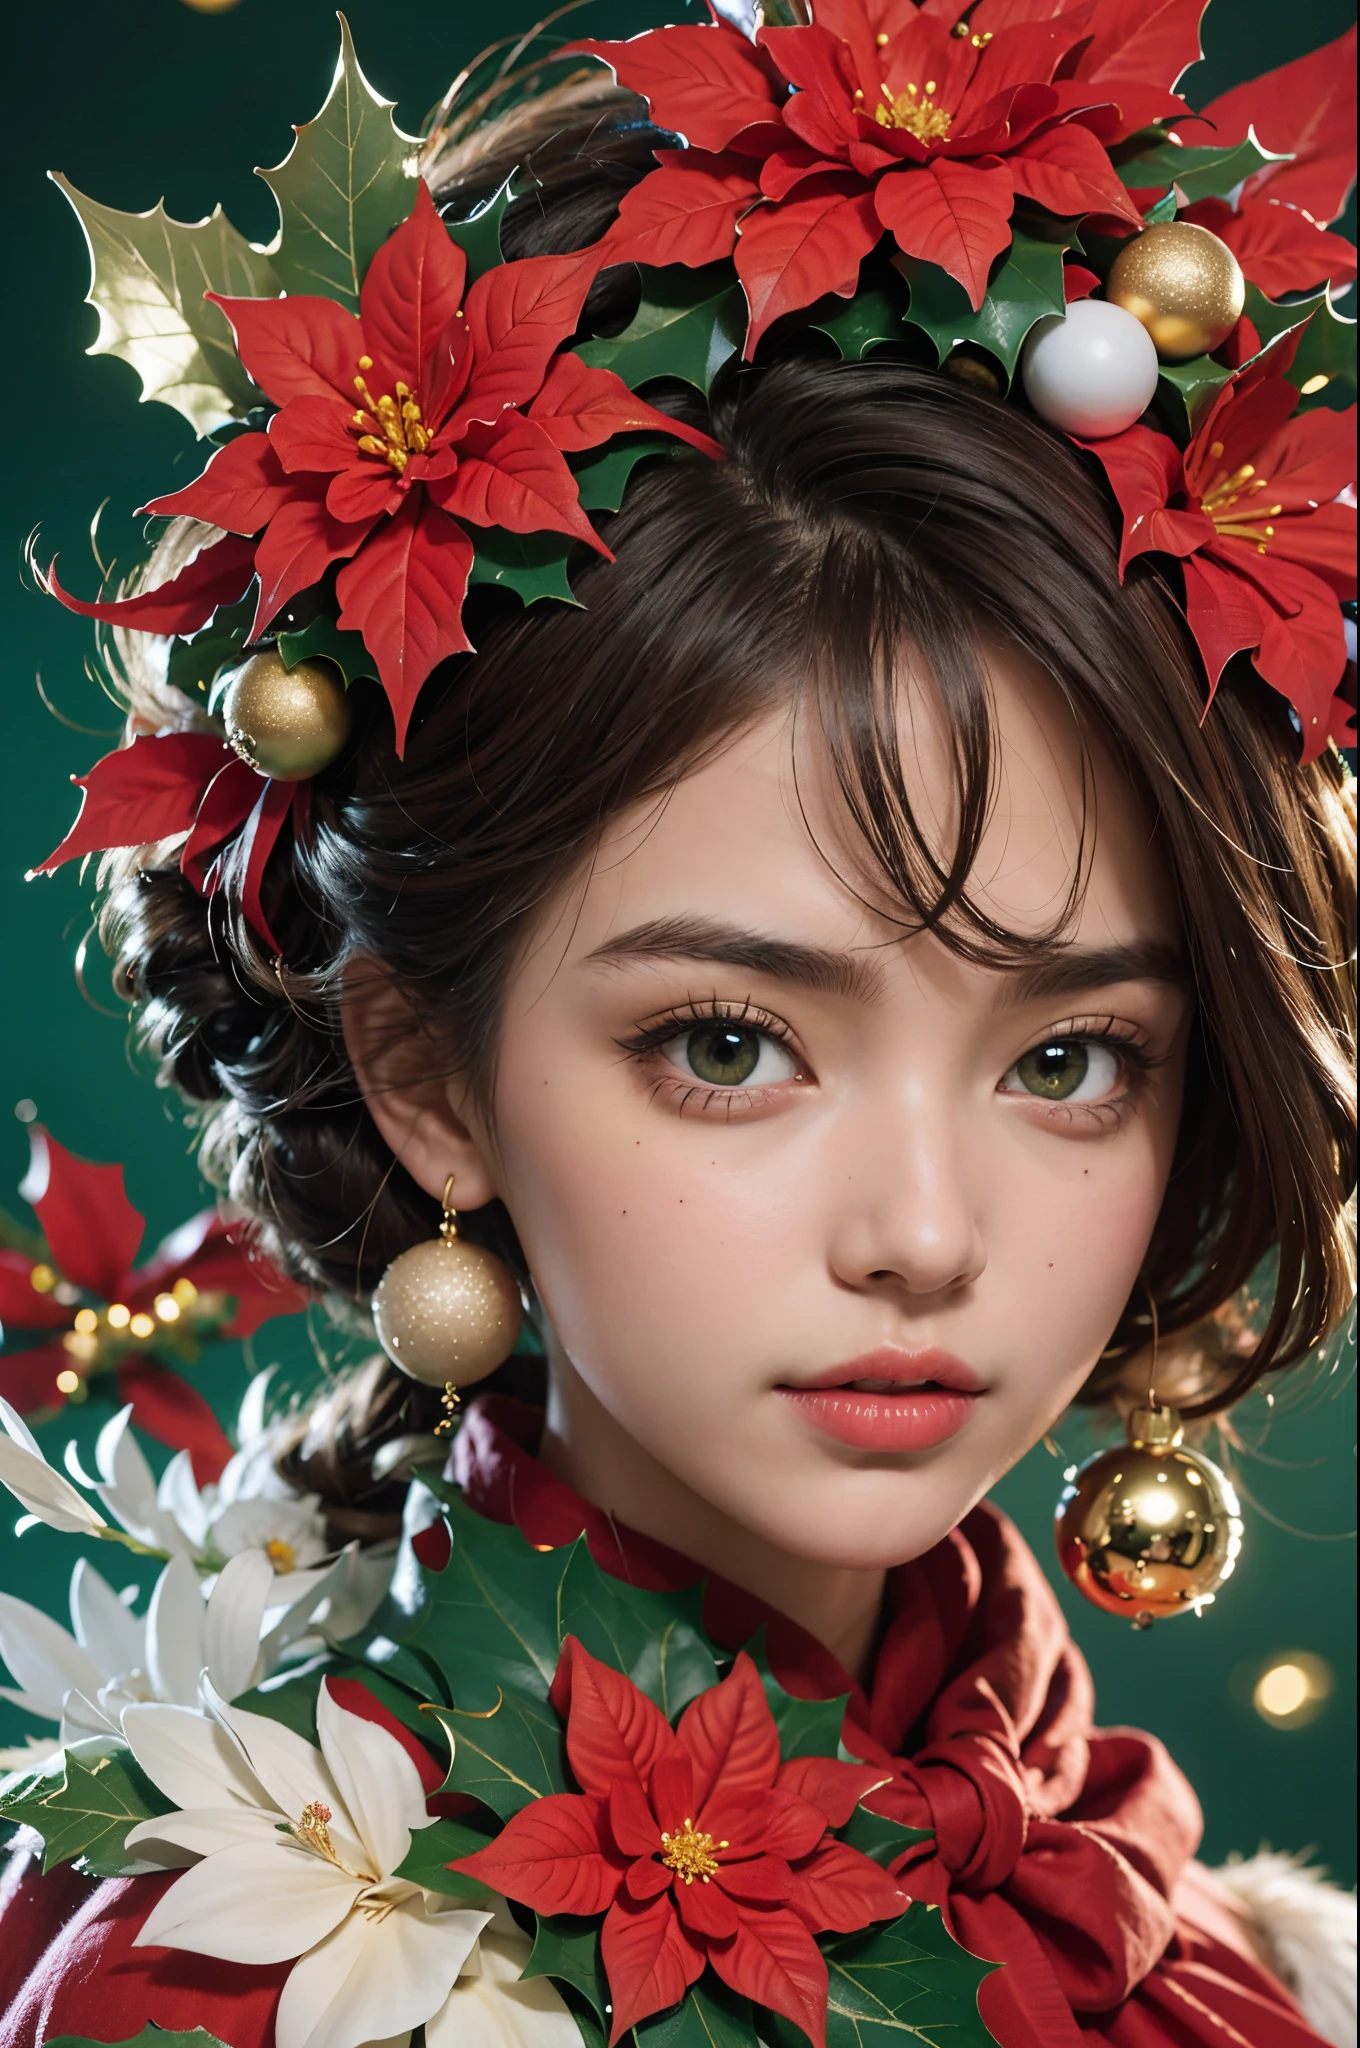 머리에 꽃 화환을 얹은 아름다운 소녀, 크리스마스 밤, 크리스마스 장식품, 갈색 눈 나무, 녹색 머리카락, (아름다운 얼굴 디테일), 복잡하고 상세한, 여성 남자의 초상화, 매우 높은 세부 사항, 현실적인 사진, 8K, UHD, 매우 상세한, (역동적인 포즈:1.4),